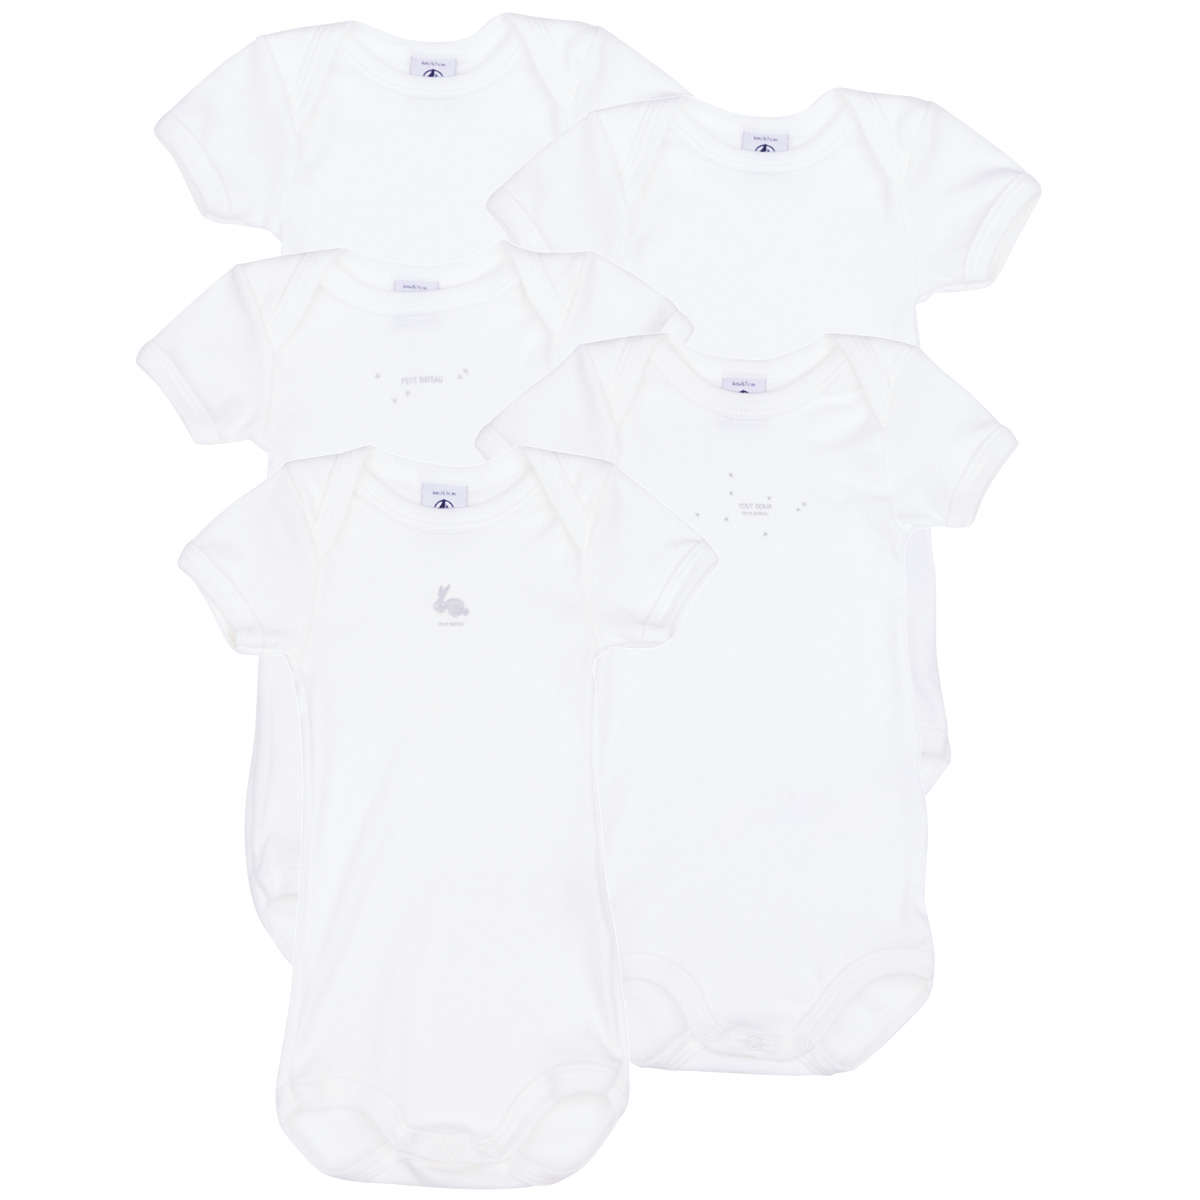 Textil Criança Cuecas e outros A09W8 X5 Branco